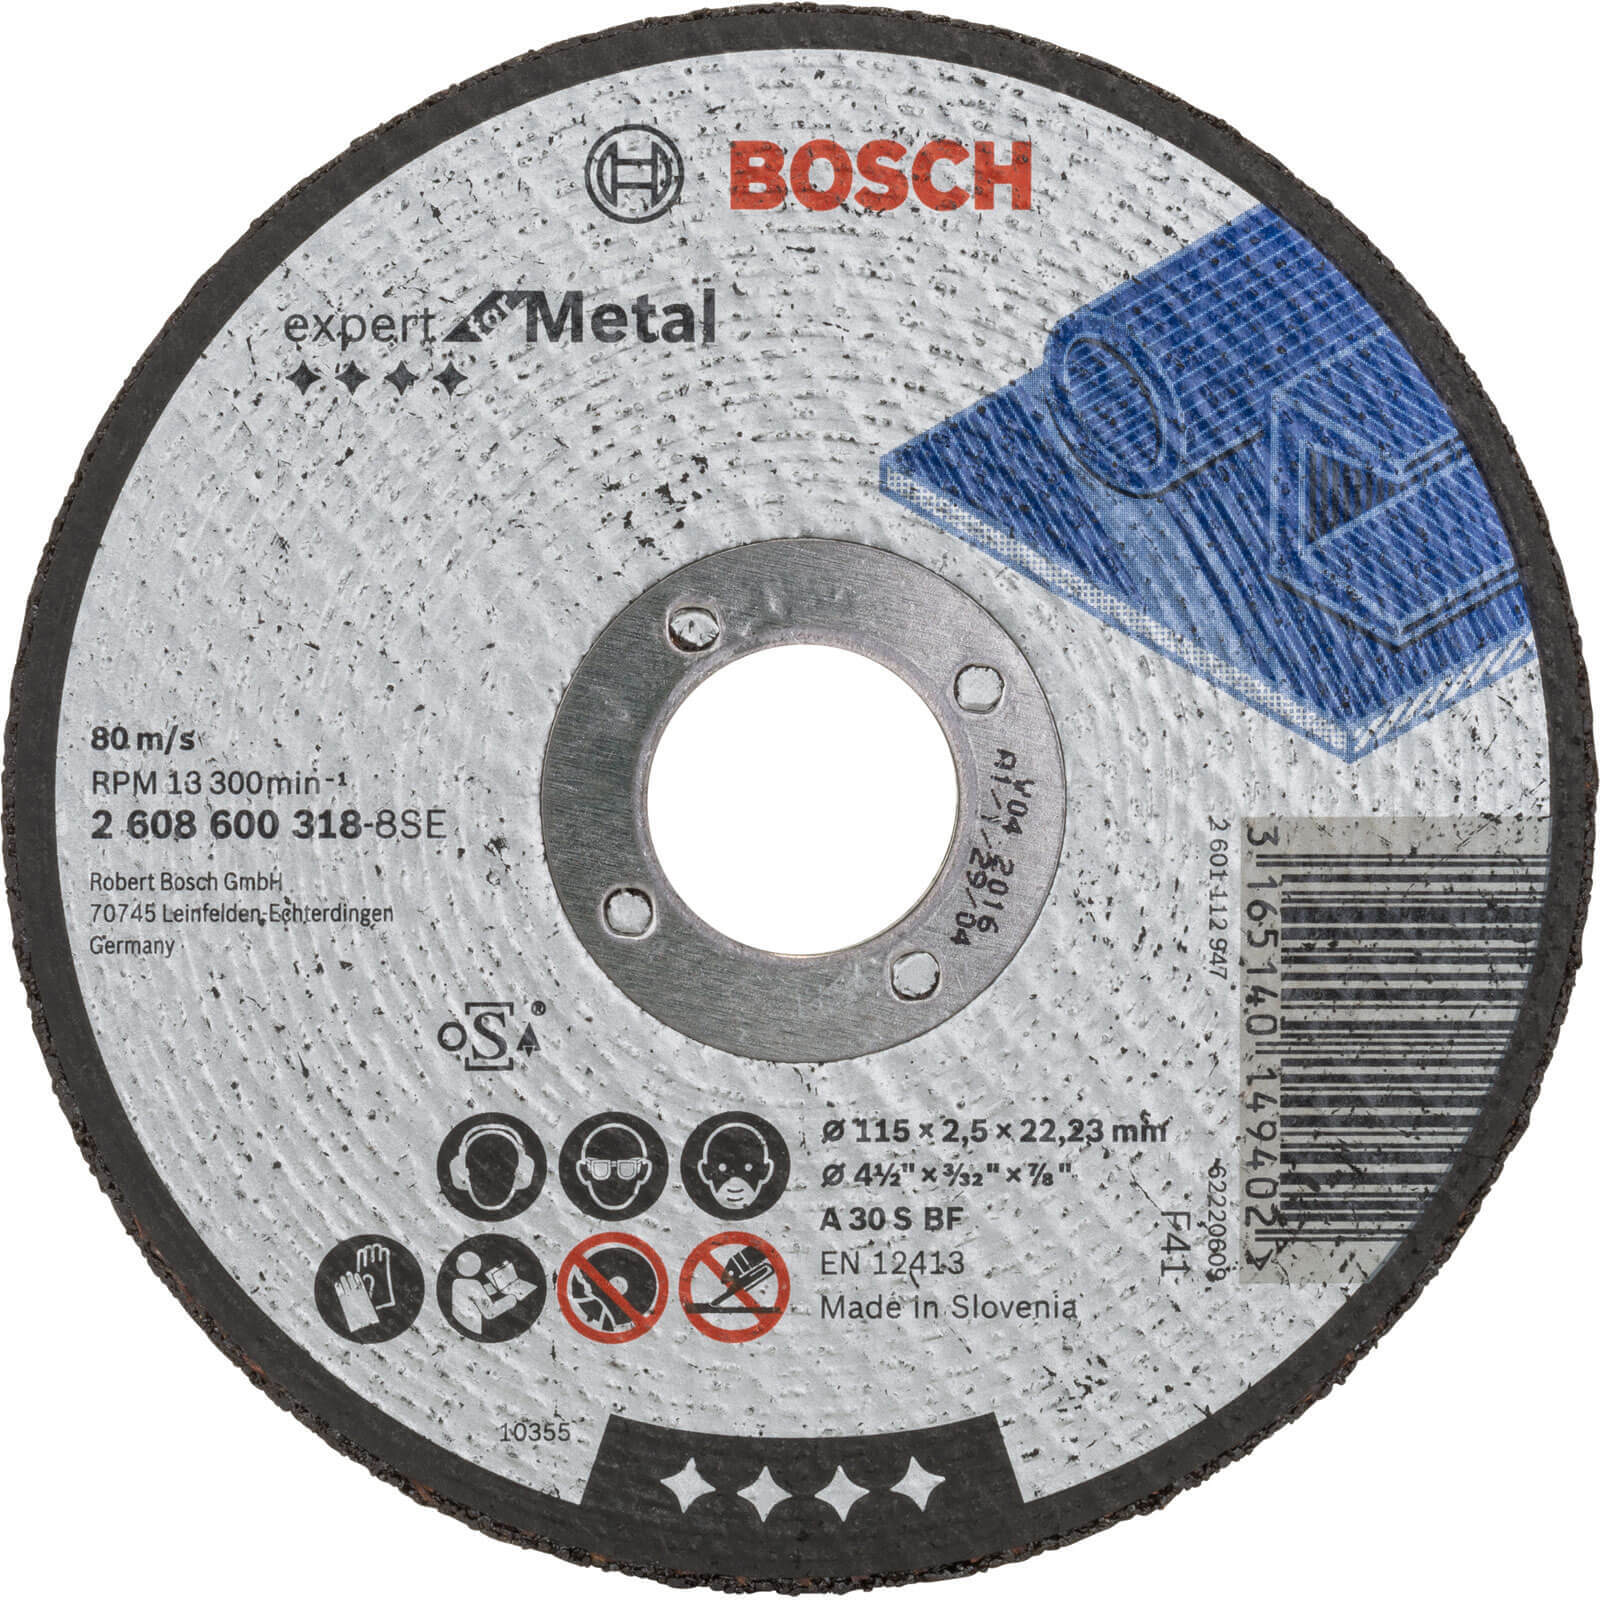 Photo of Bosch Expert A30s Bf Flat Metal Cutting Disc 115mm